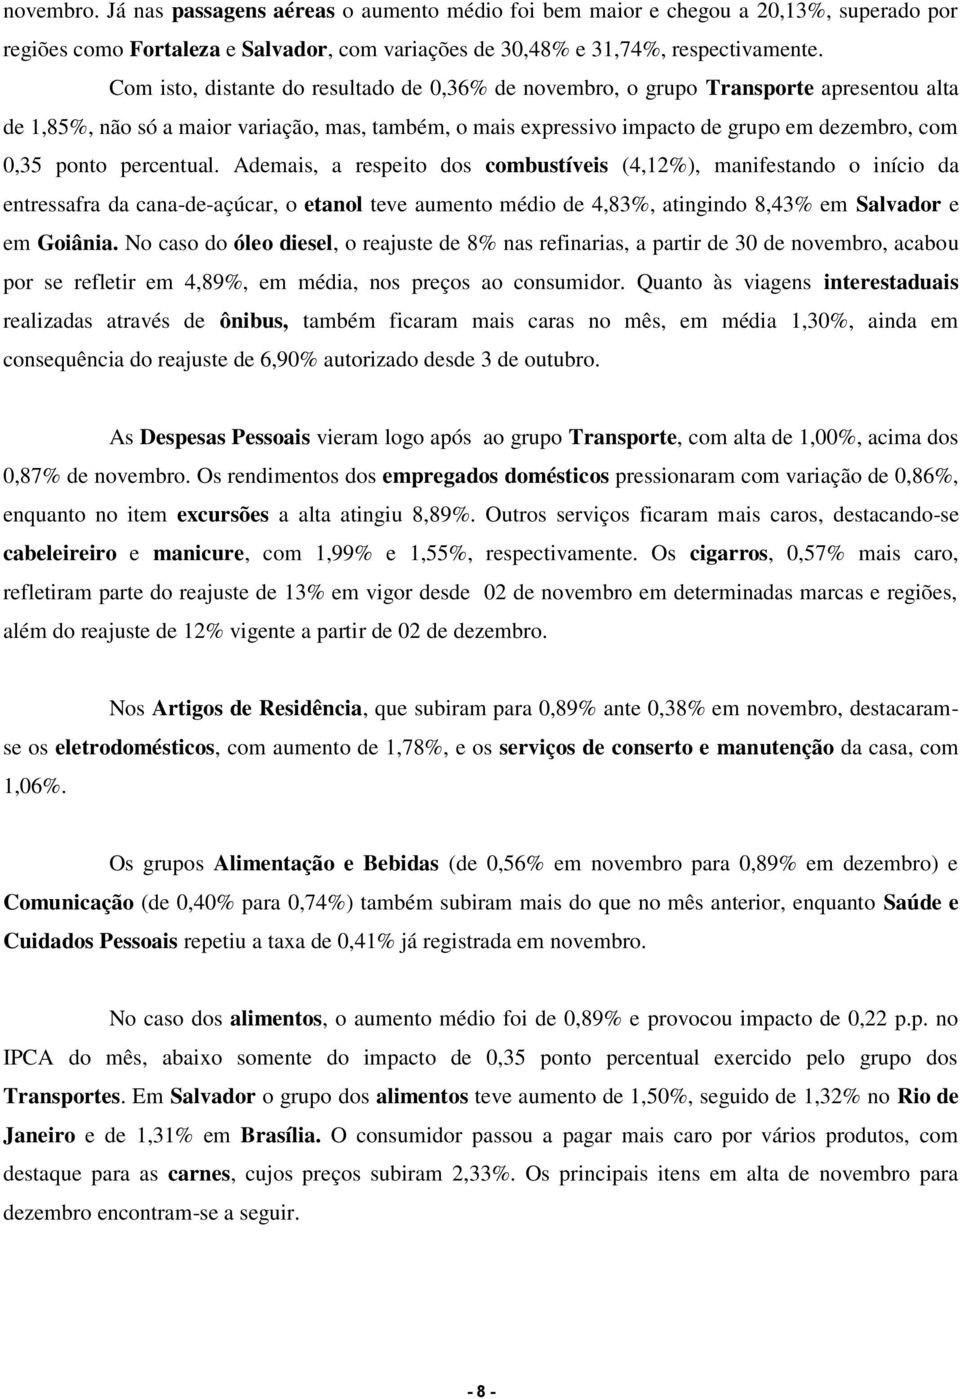 percentual. Ademais, a respeito dos combustíveis (4,12%), manifestando o início da entressafra da cana-de-açúcar, o etanol teve aumento médio de 4,83%, atingindo 8,43% em Salvador e em Goiânia.